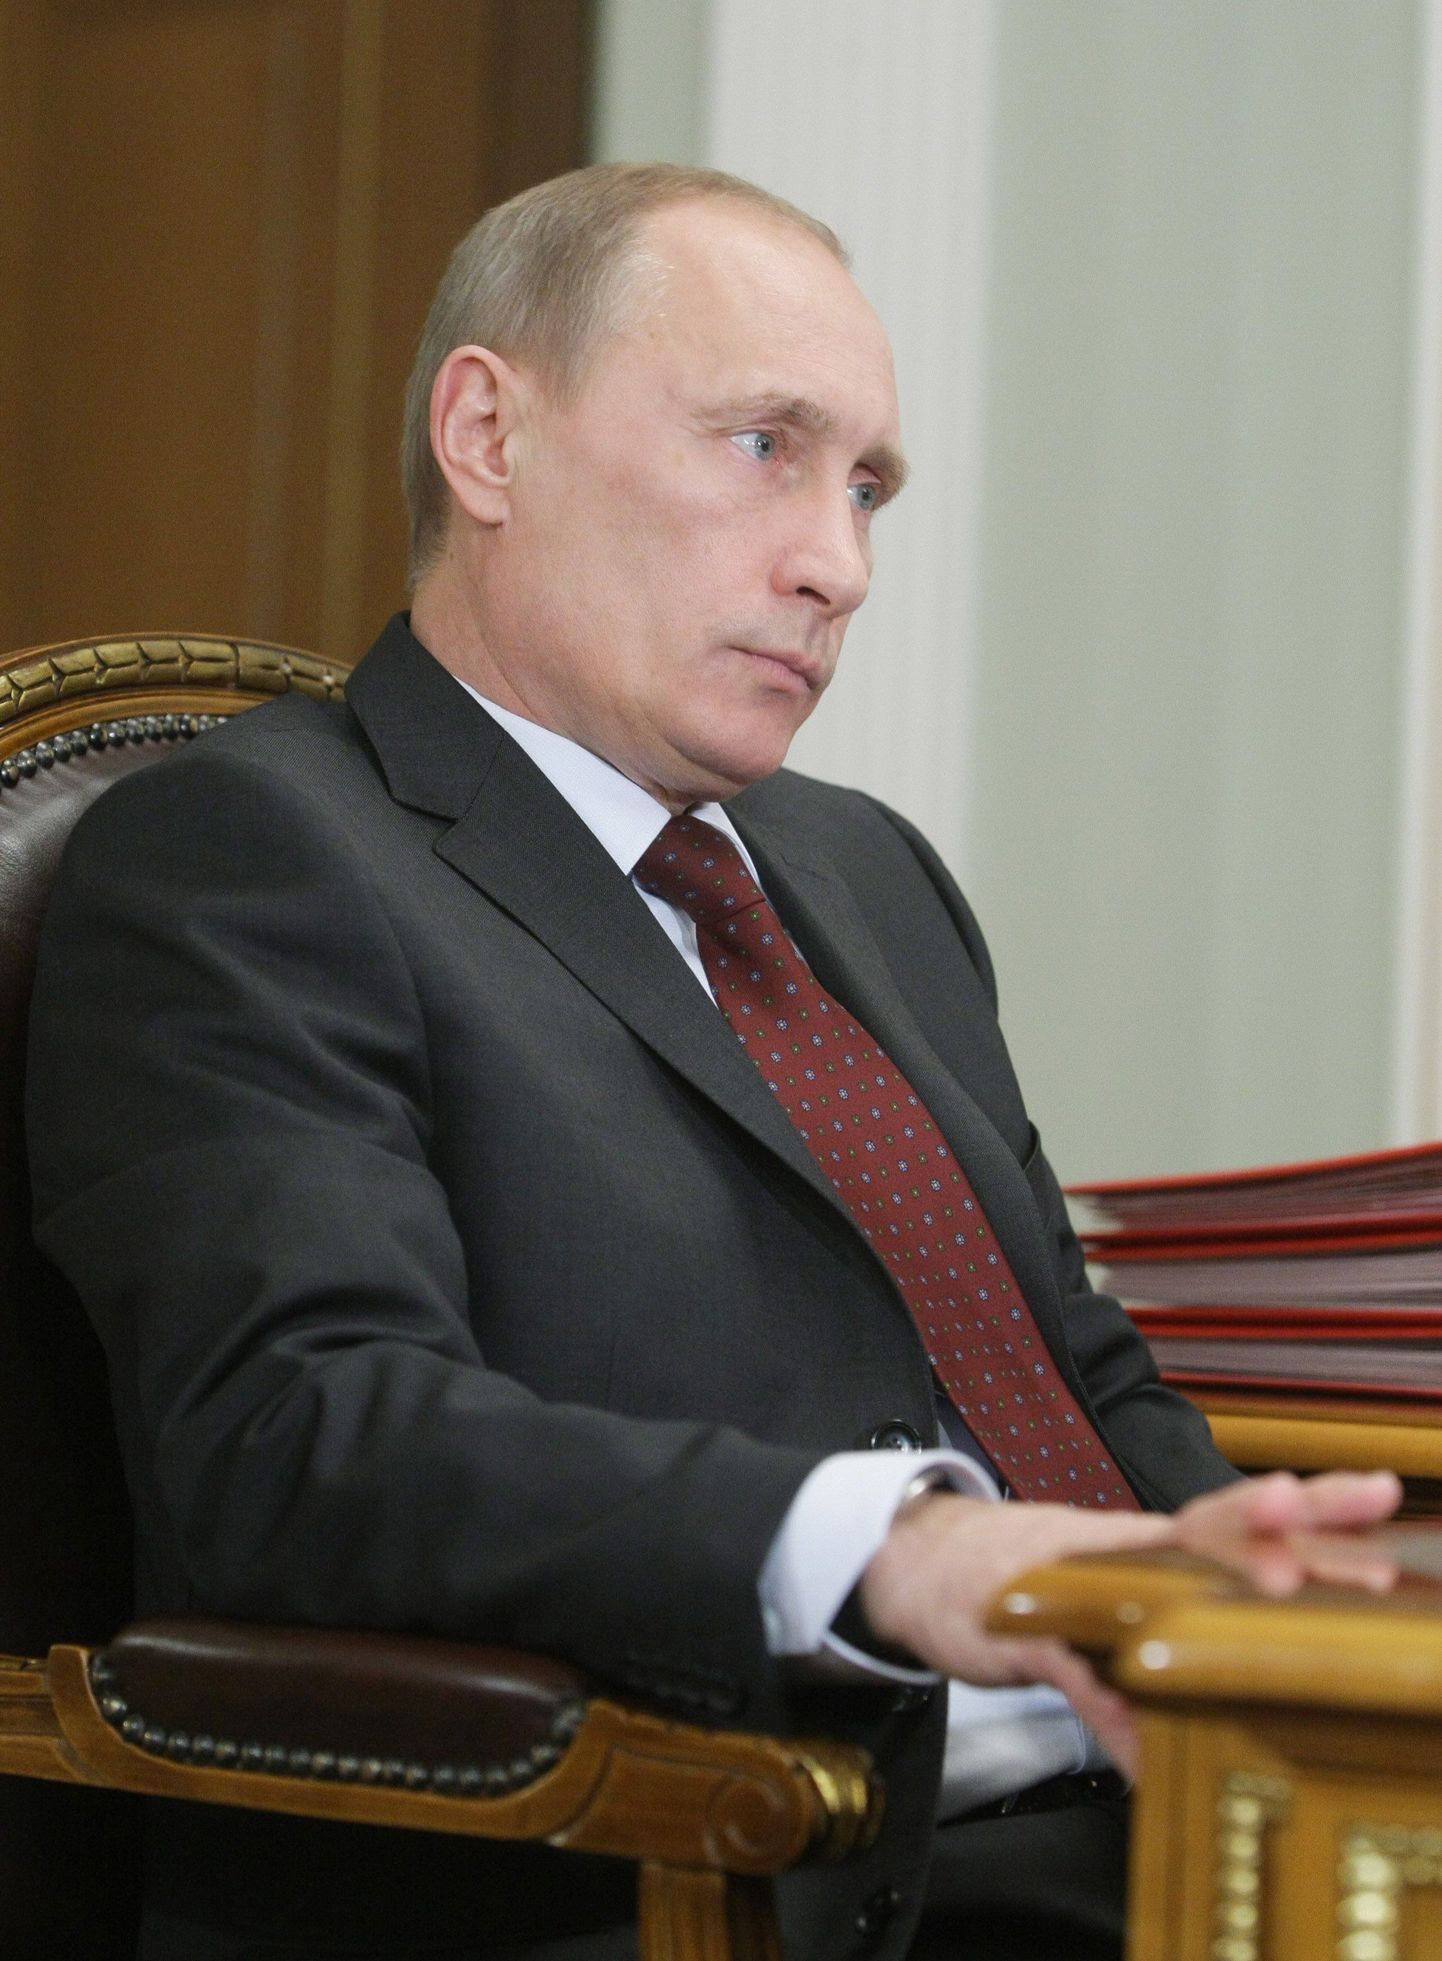 Пресс-секретарь Владимира Путина заявил, что премьер России не имеет к объекту никакого отношения.